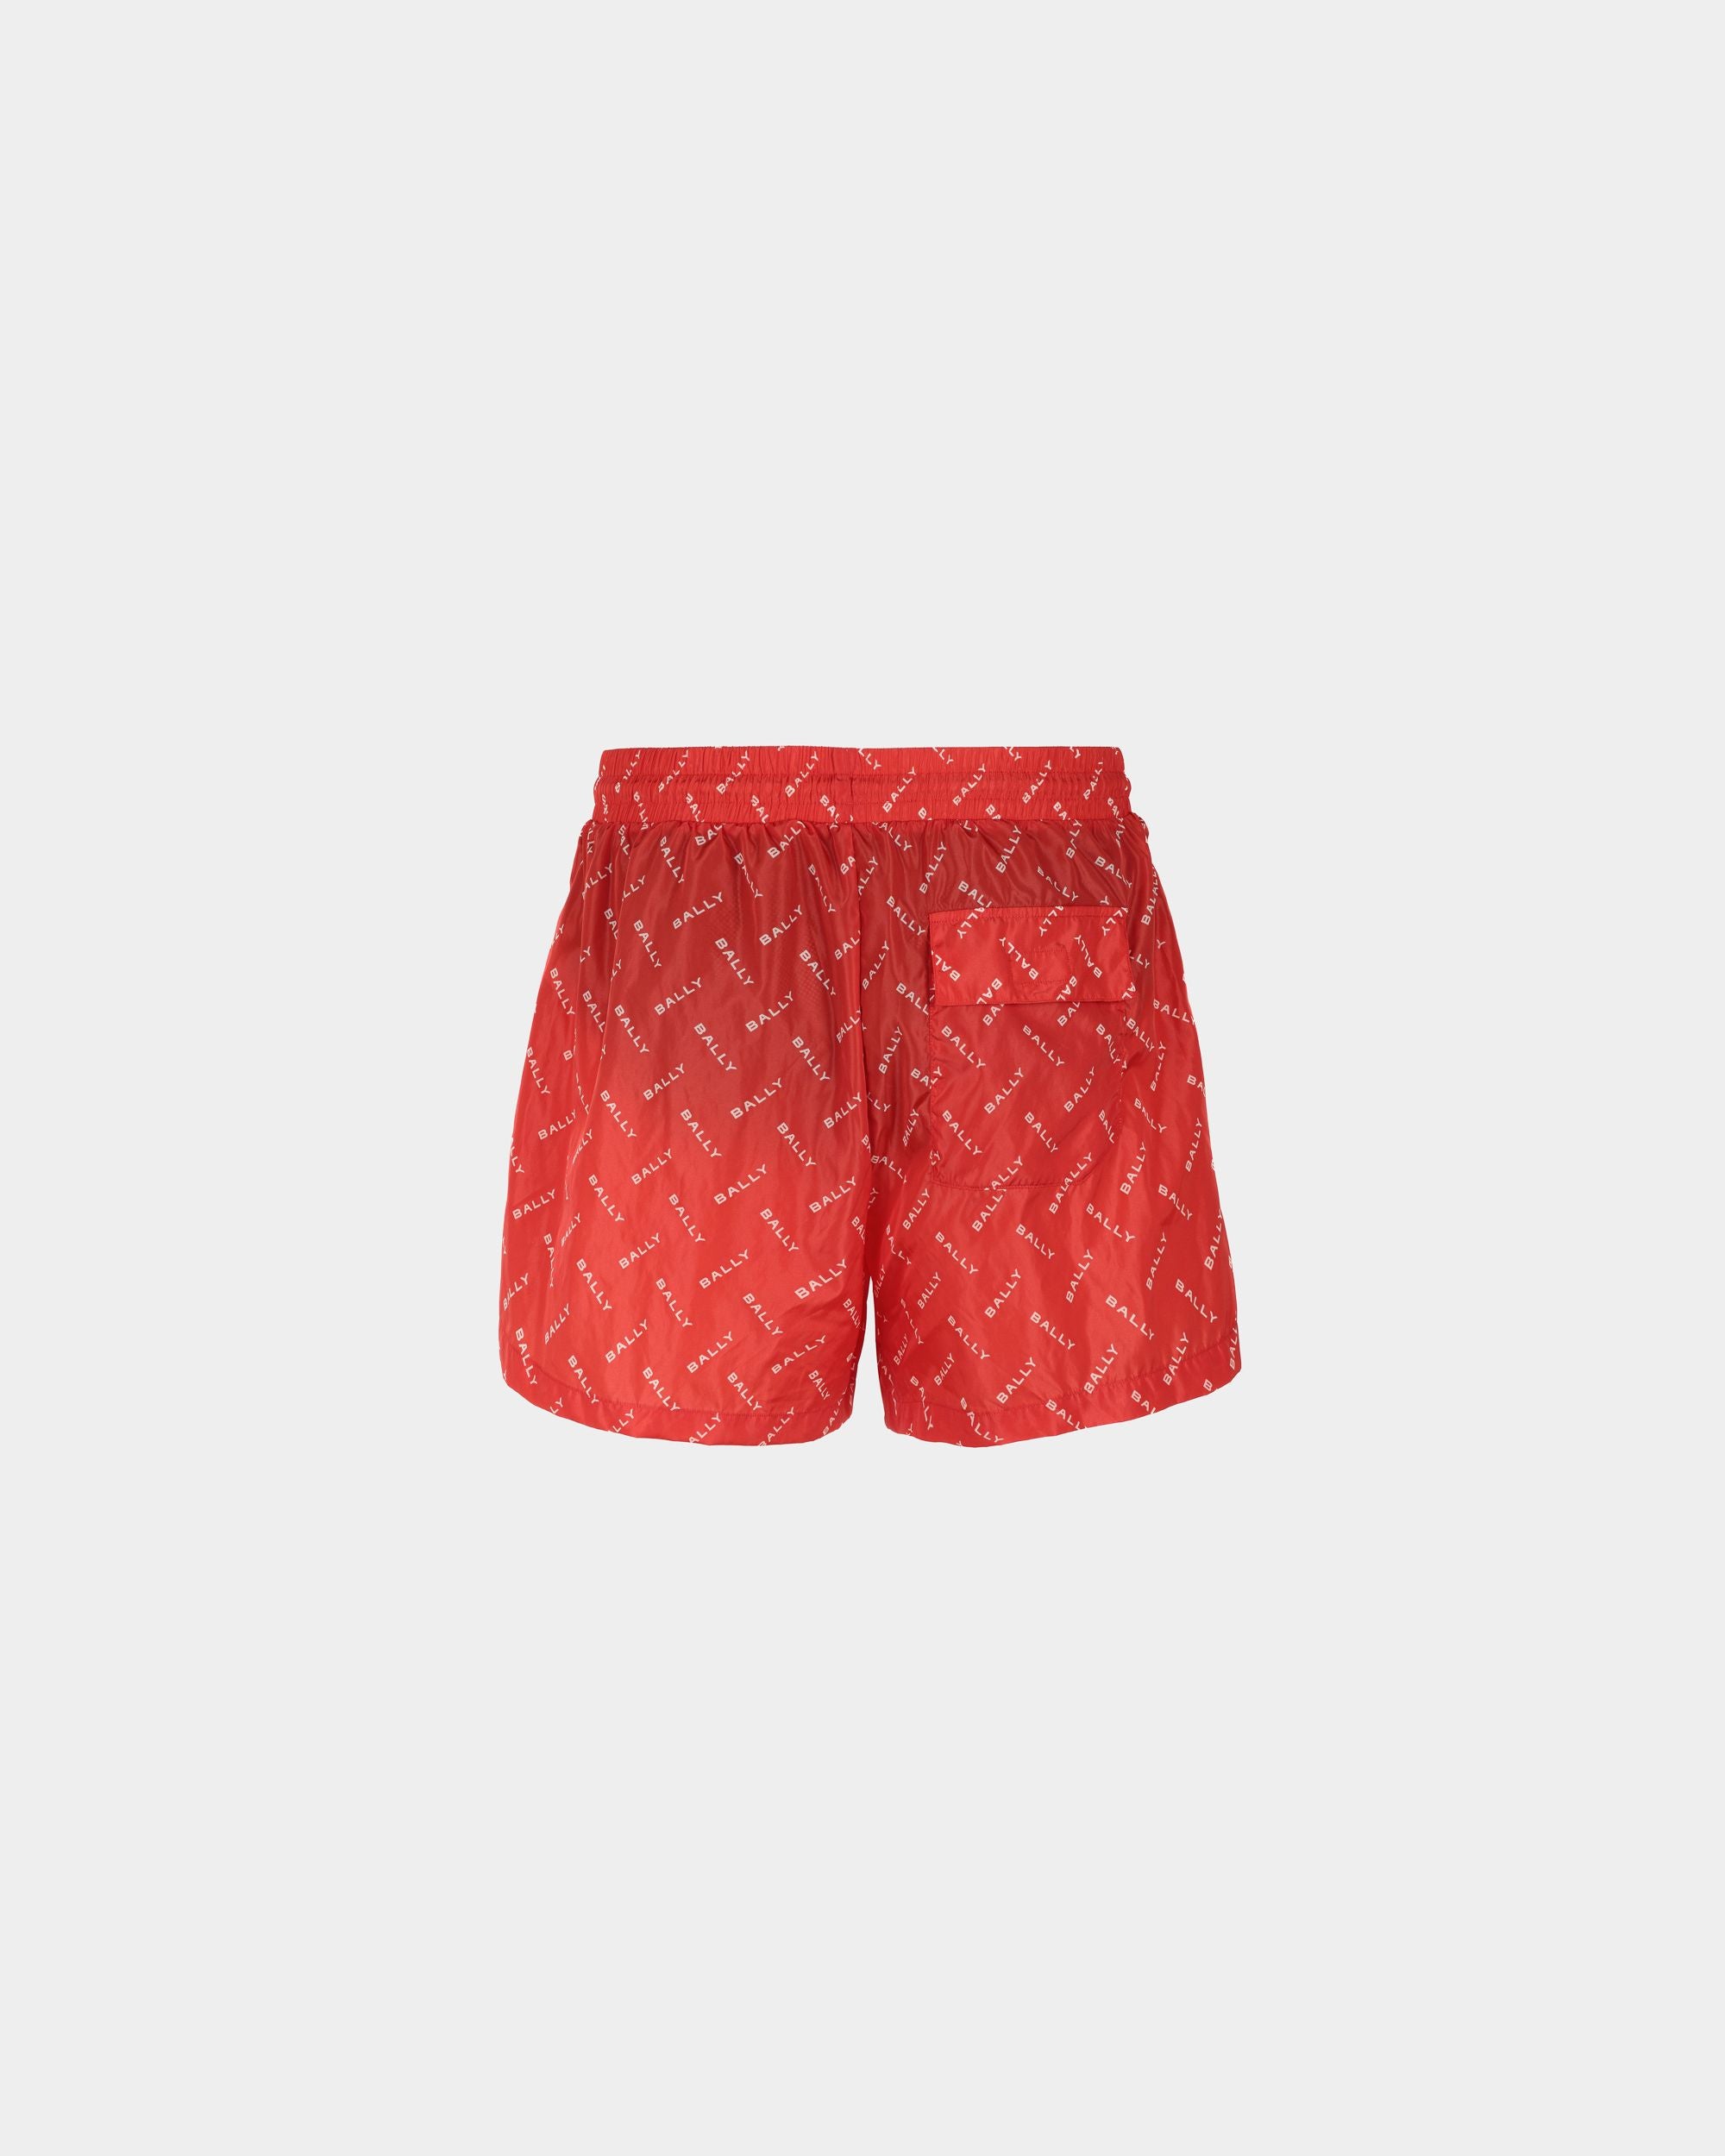 Men's Swim Trunks in Red Fabric| Bally | Still Life Back